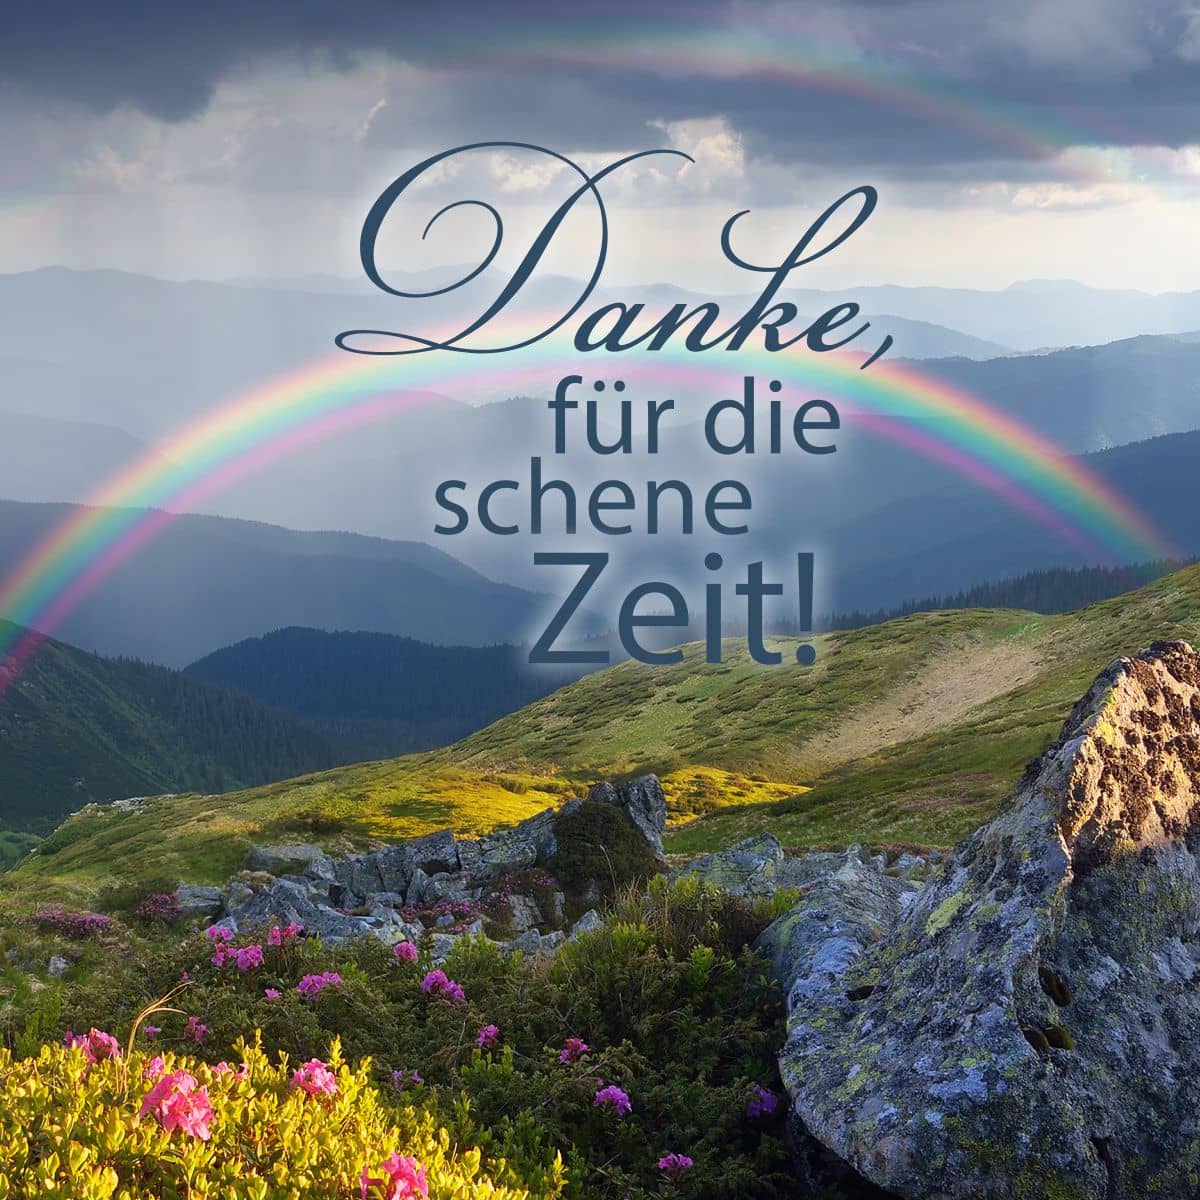 Motiv Regenbogen in Berglandschaft mit Text "Danke, für die schene Zeit!"